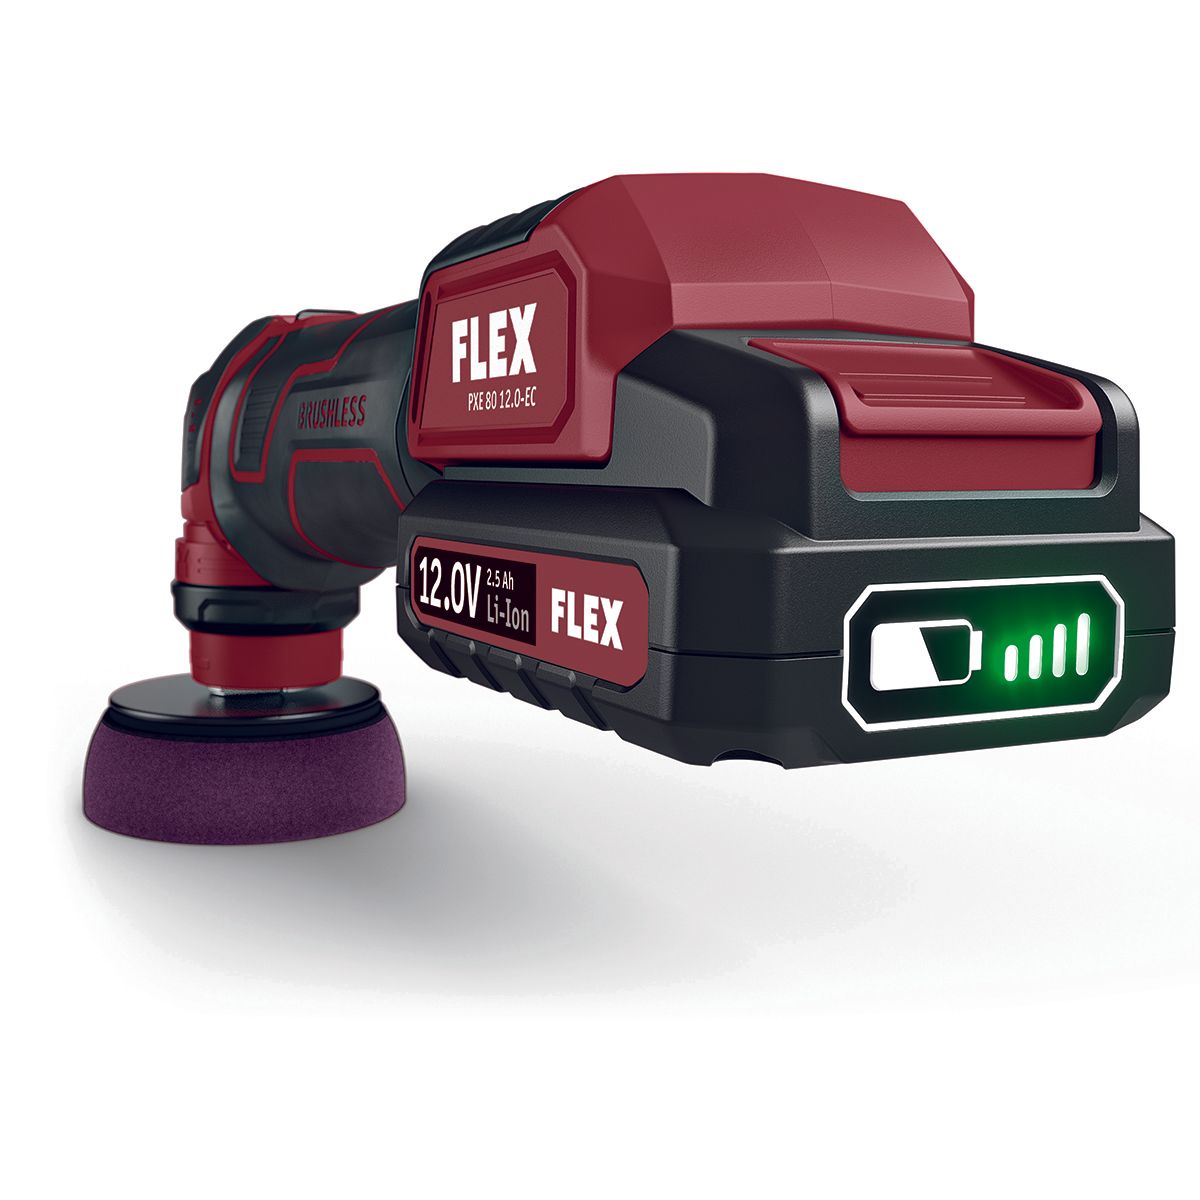 Flex PXE 80 12V Kit - Mini Polisseuse à Batterie - Passion Detailing